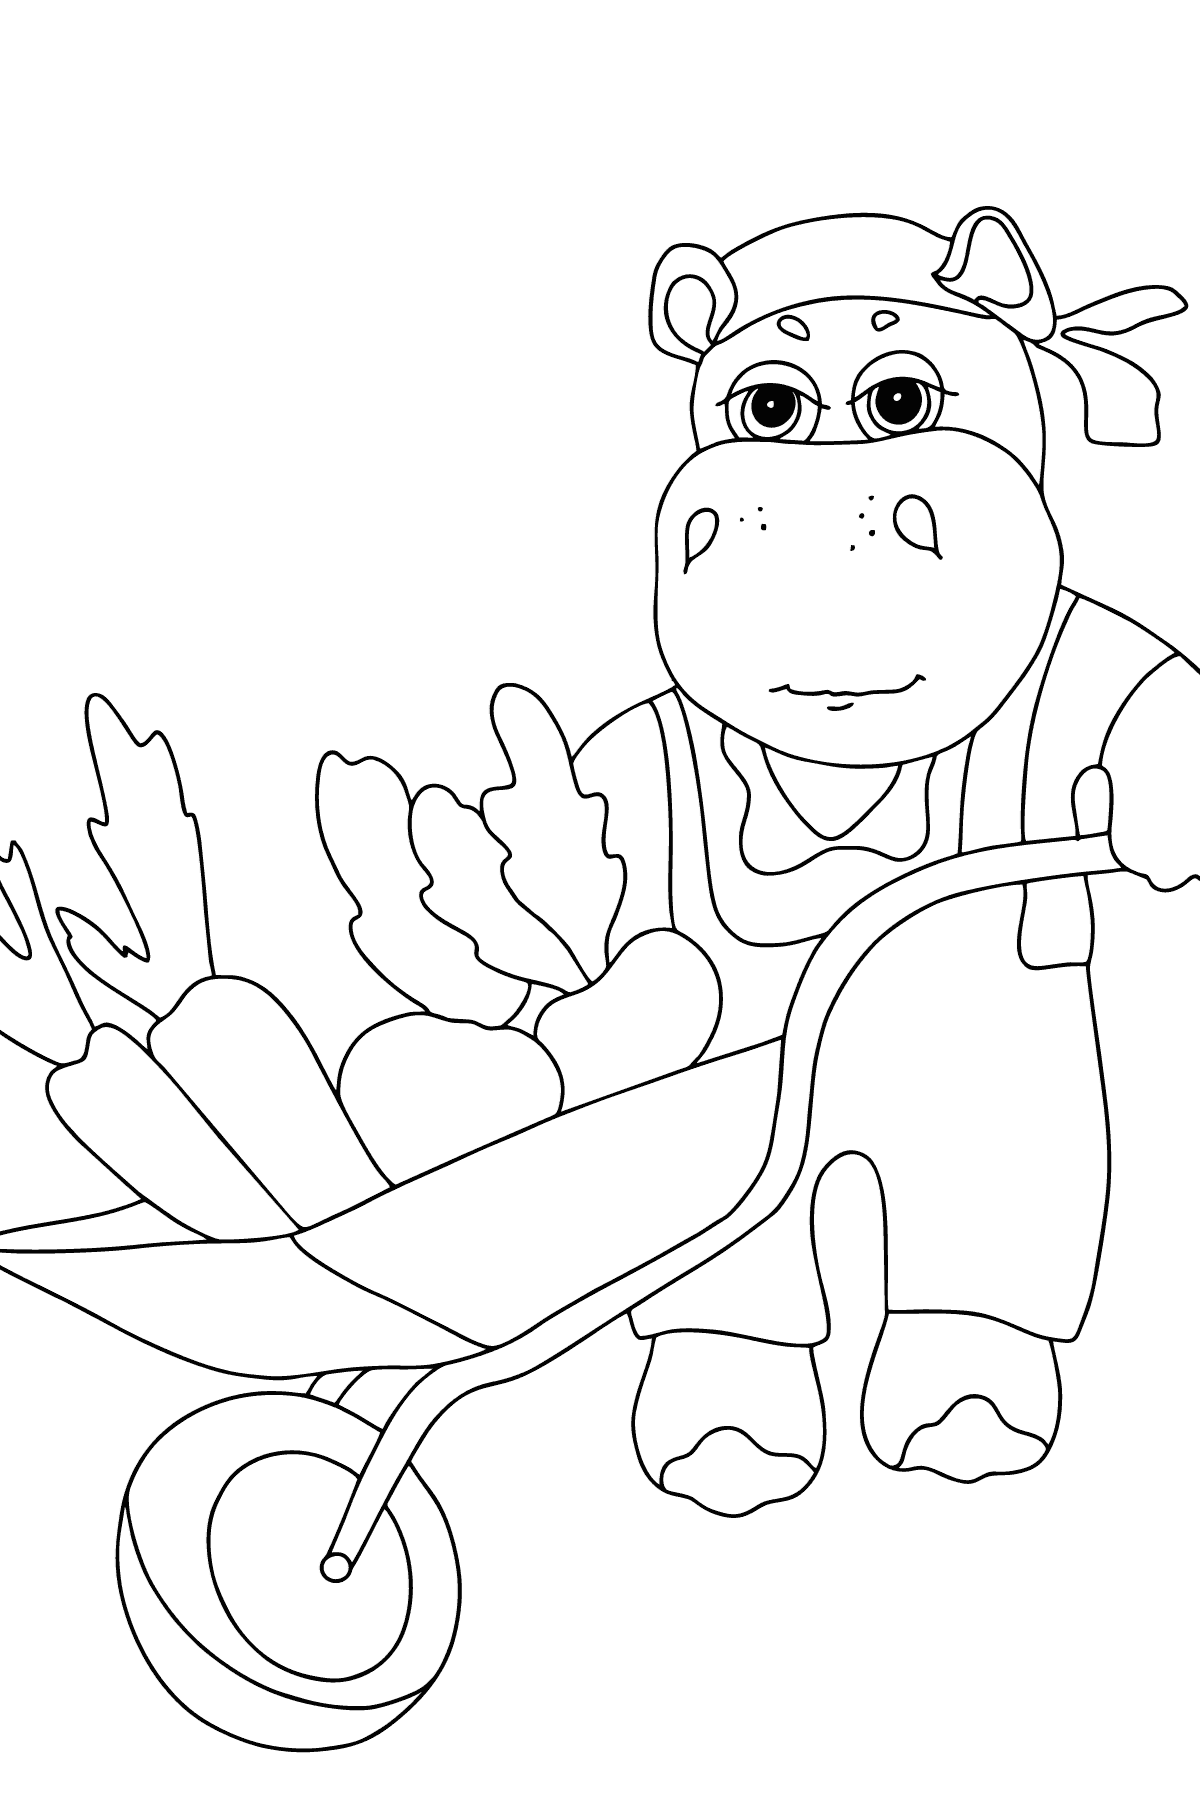 Coloriage Hippopotame gentil - Coloriages pour les Enfants